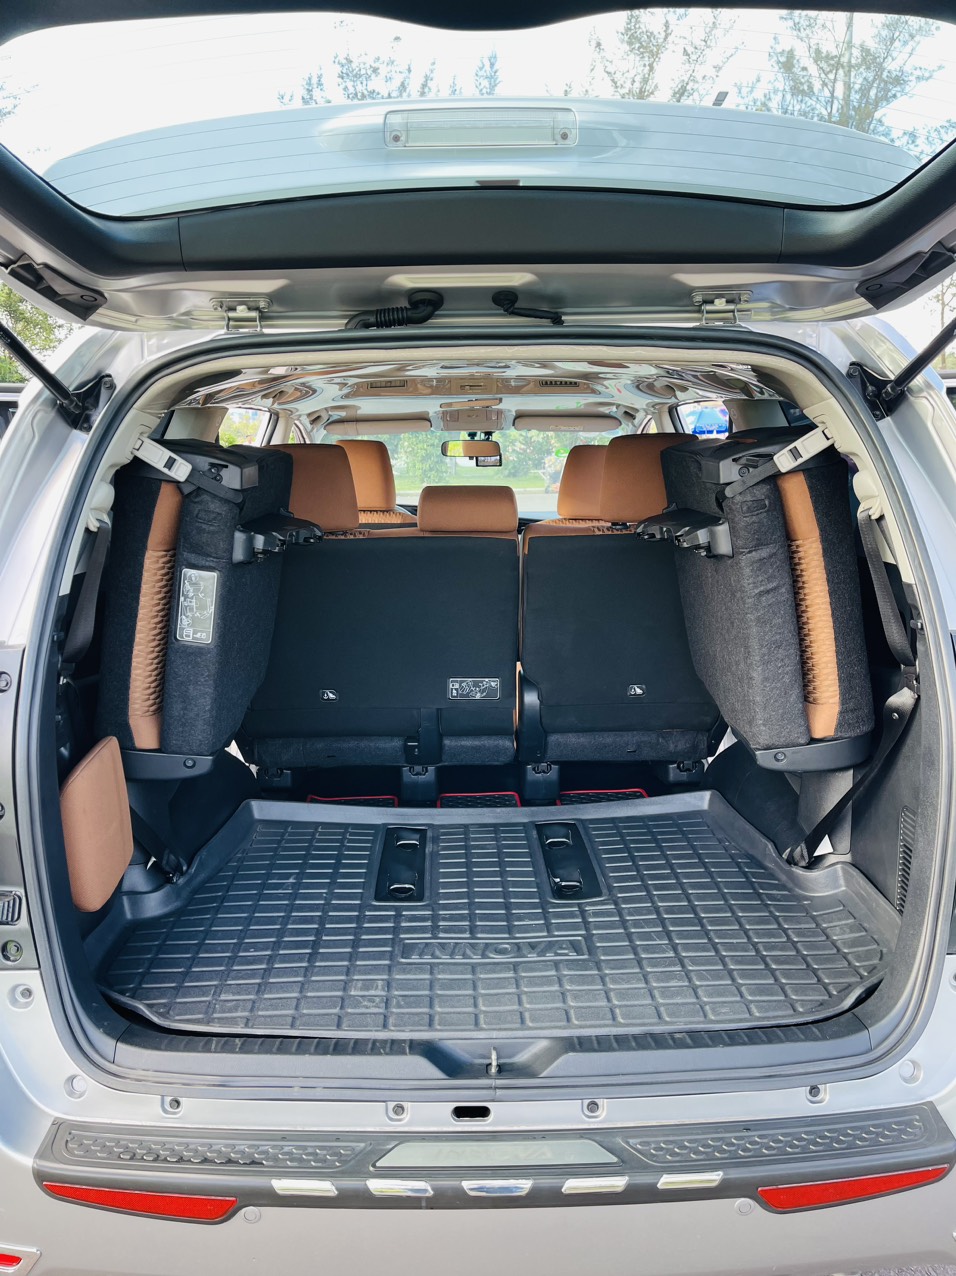 UUsed Car Dealer Trimap đang bán; Toyota Innova E 2.0 sx 2019, đăng ký 2020 một chủ mua mới đầu. -3